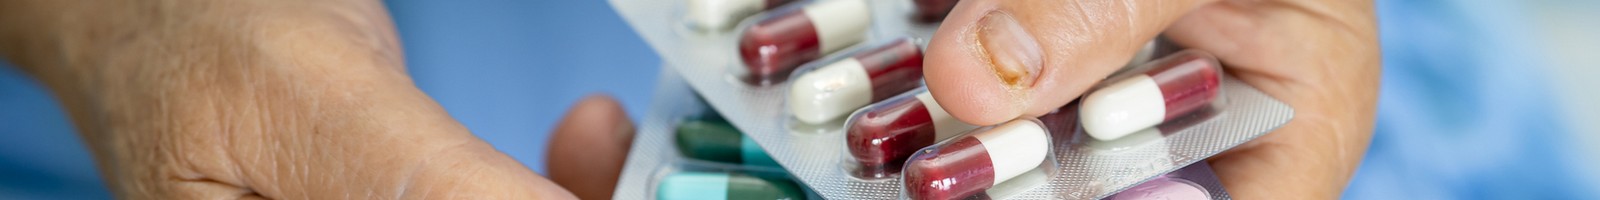 Antibiotiques pour la cystite et l’angine : accessibles en pharmacie sans ordonnance??